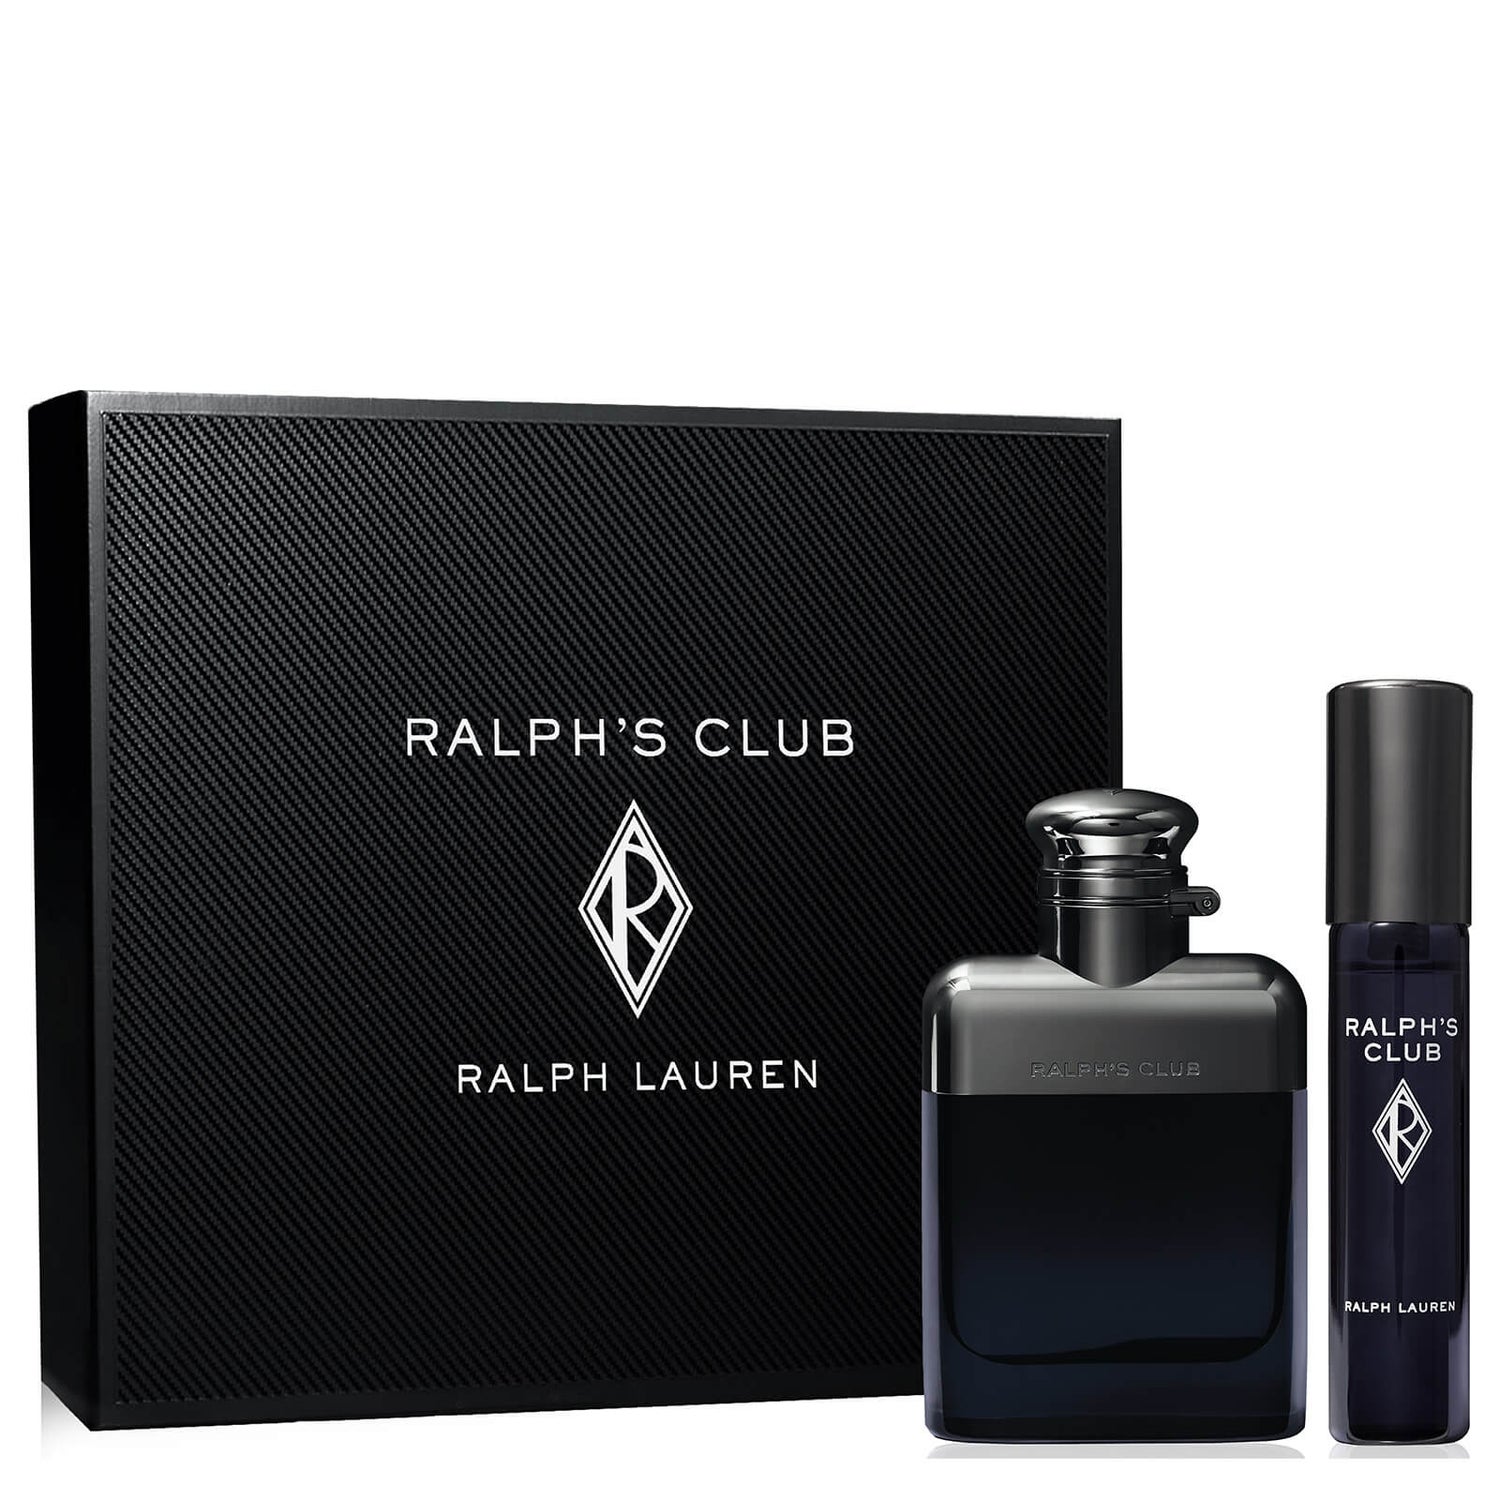 Ralph Lauren Ralph's Club Ralph's Club Eau de Toilette Gift Set 50ml (værdi £64.00)